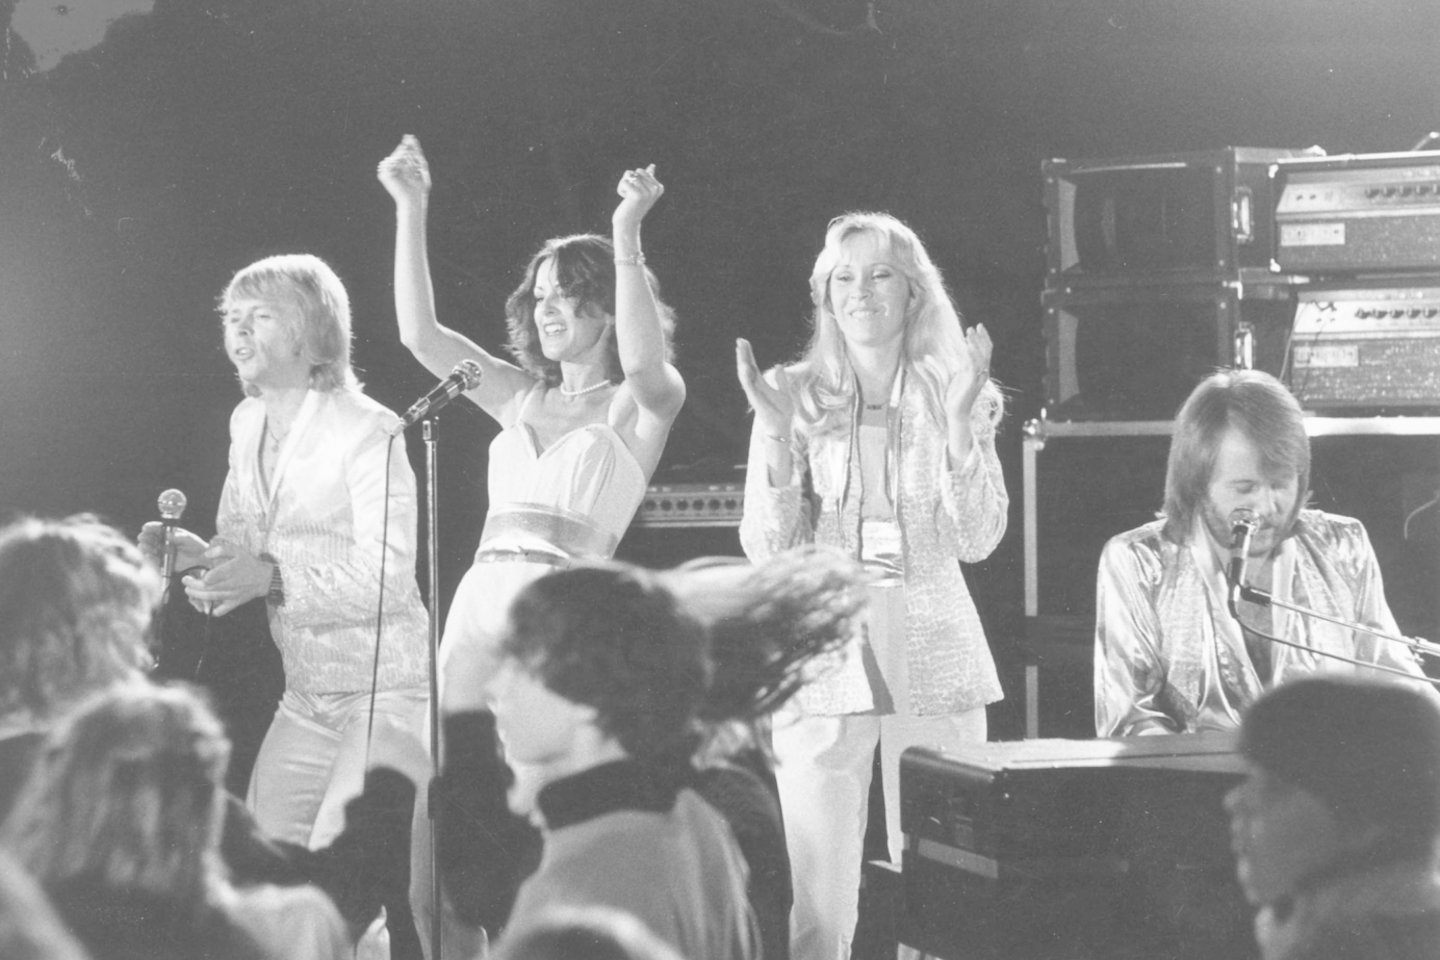  Grupė ABBA.<br> TopFoto/Scanpix nuotr.